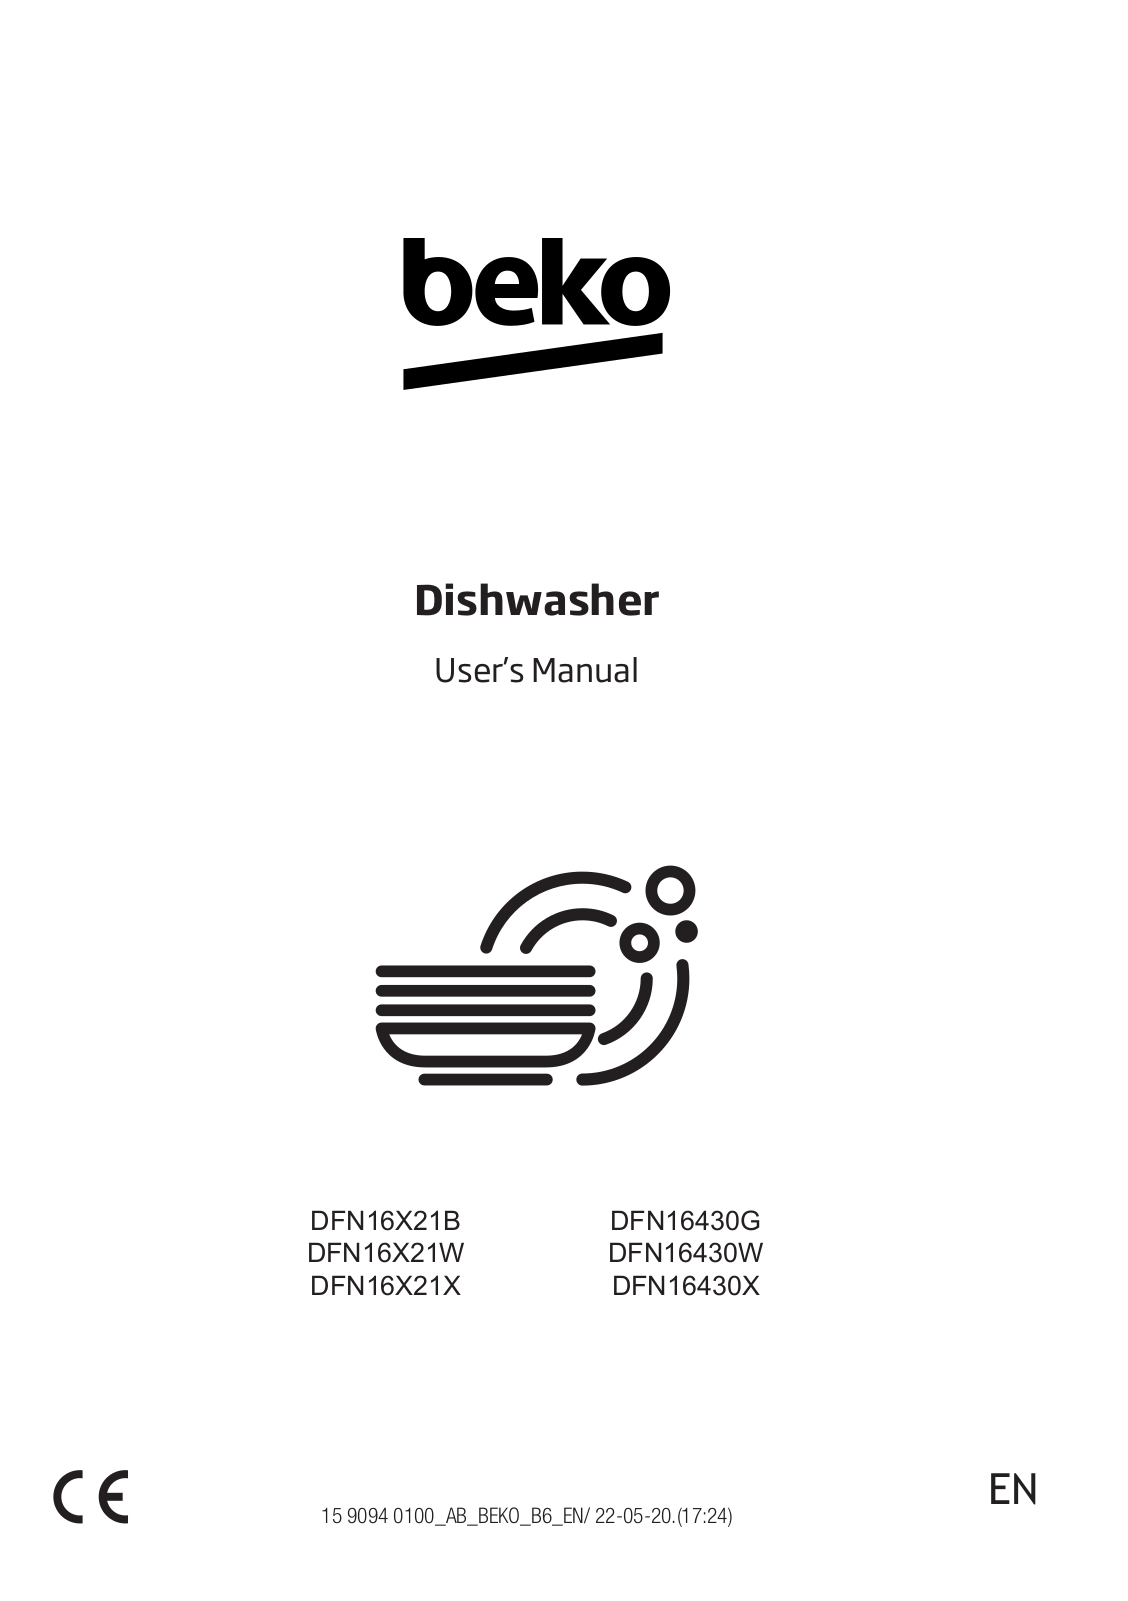 Beko beko Dishwasher User Manual